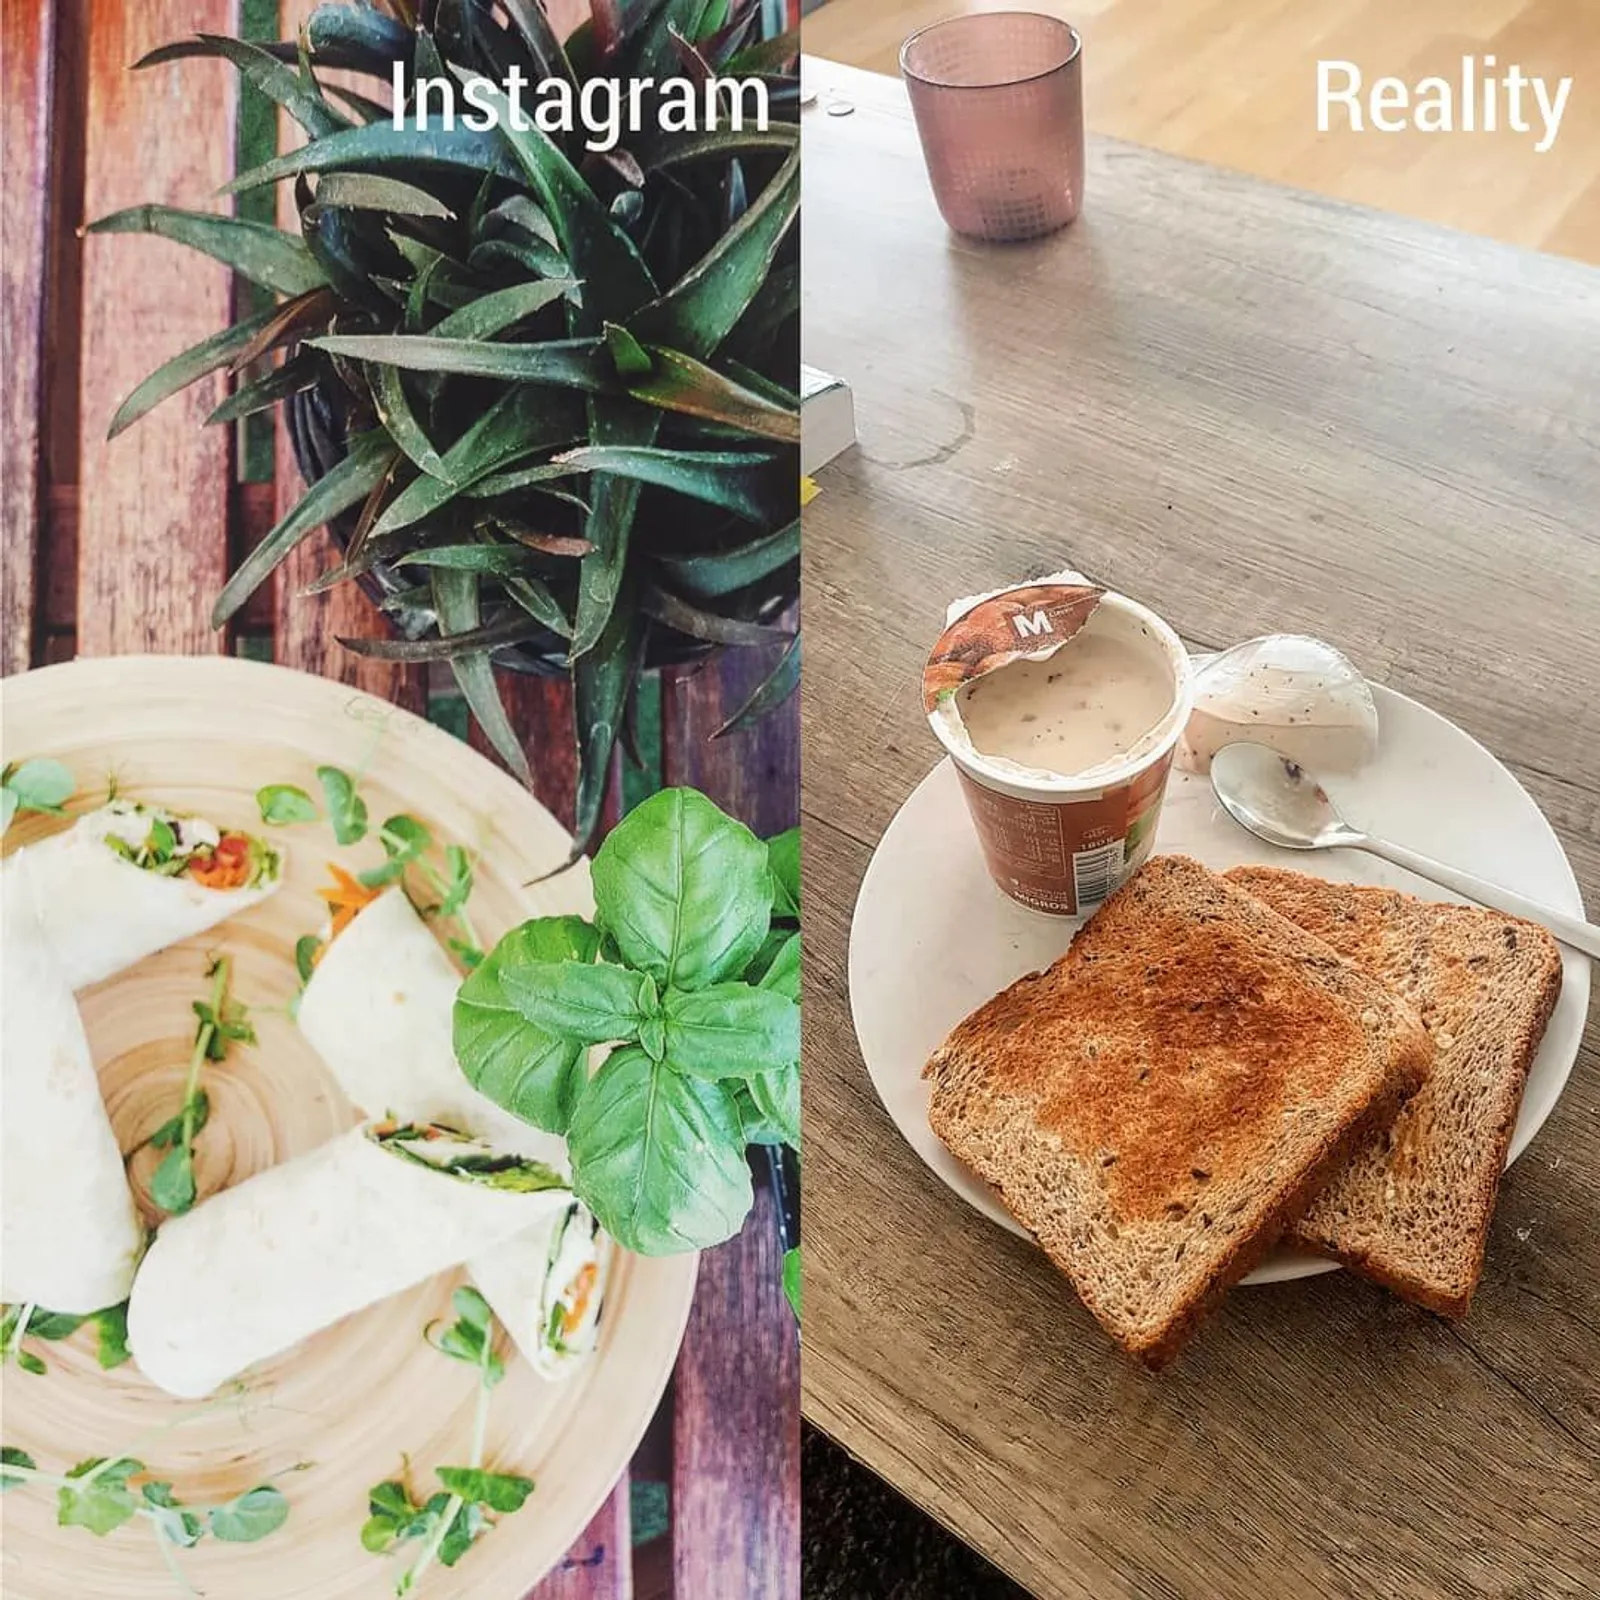 Nggak Secantik di Instagram, Ini 10 Foto Nyata Si Pencinta Makanan